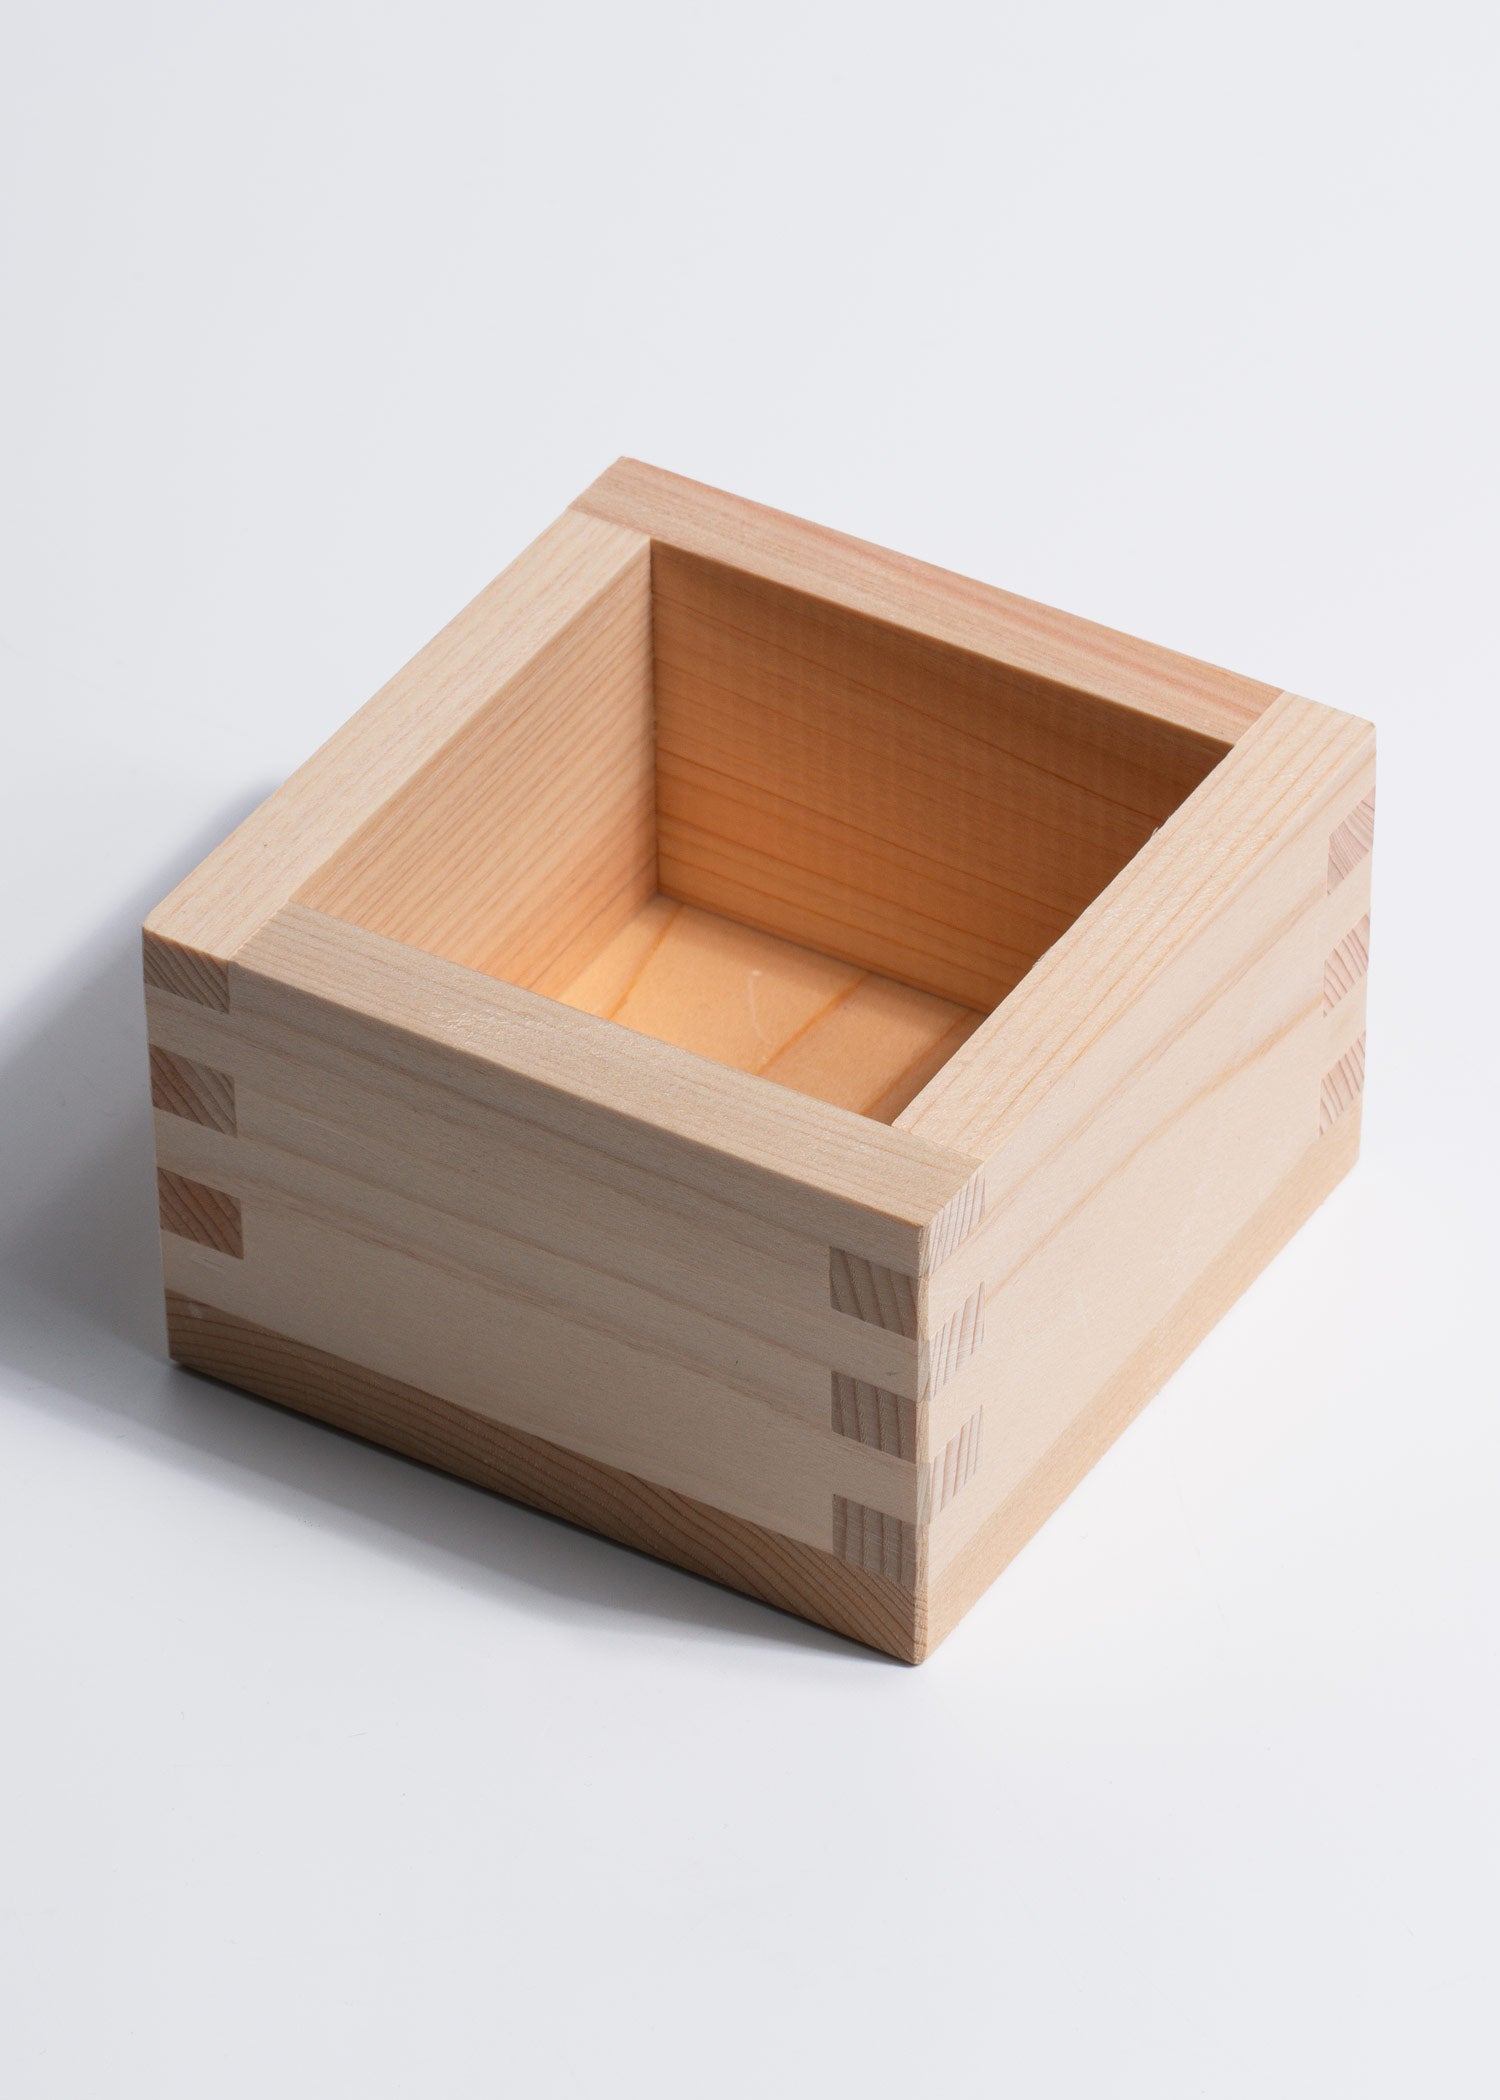 wood sake madera maha